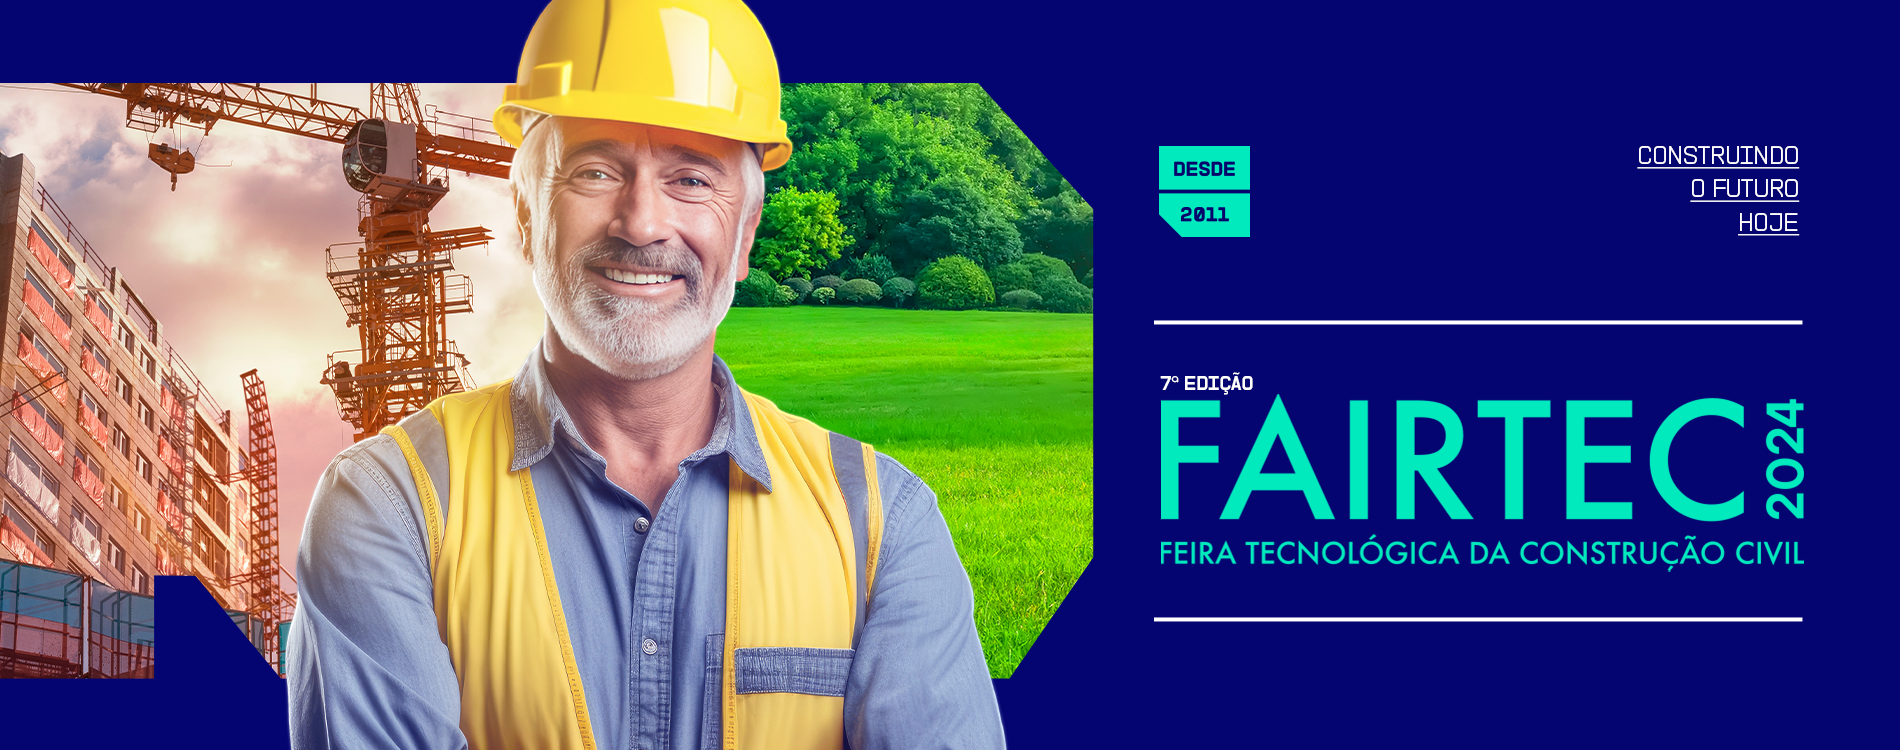 Fairtec - Feira de Tecnologia da Construção Civil